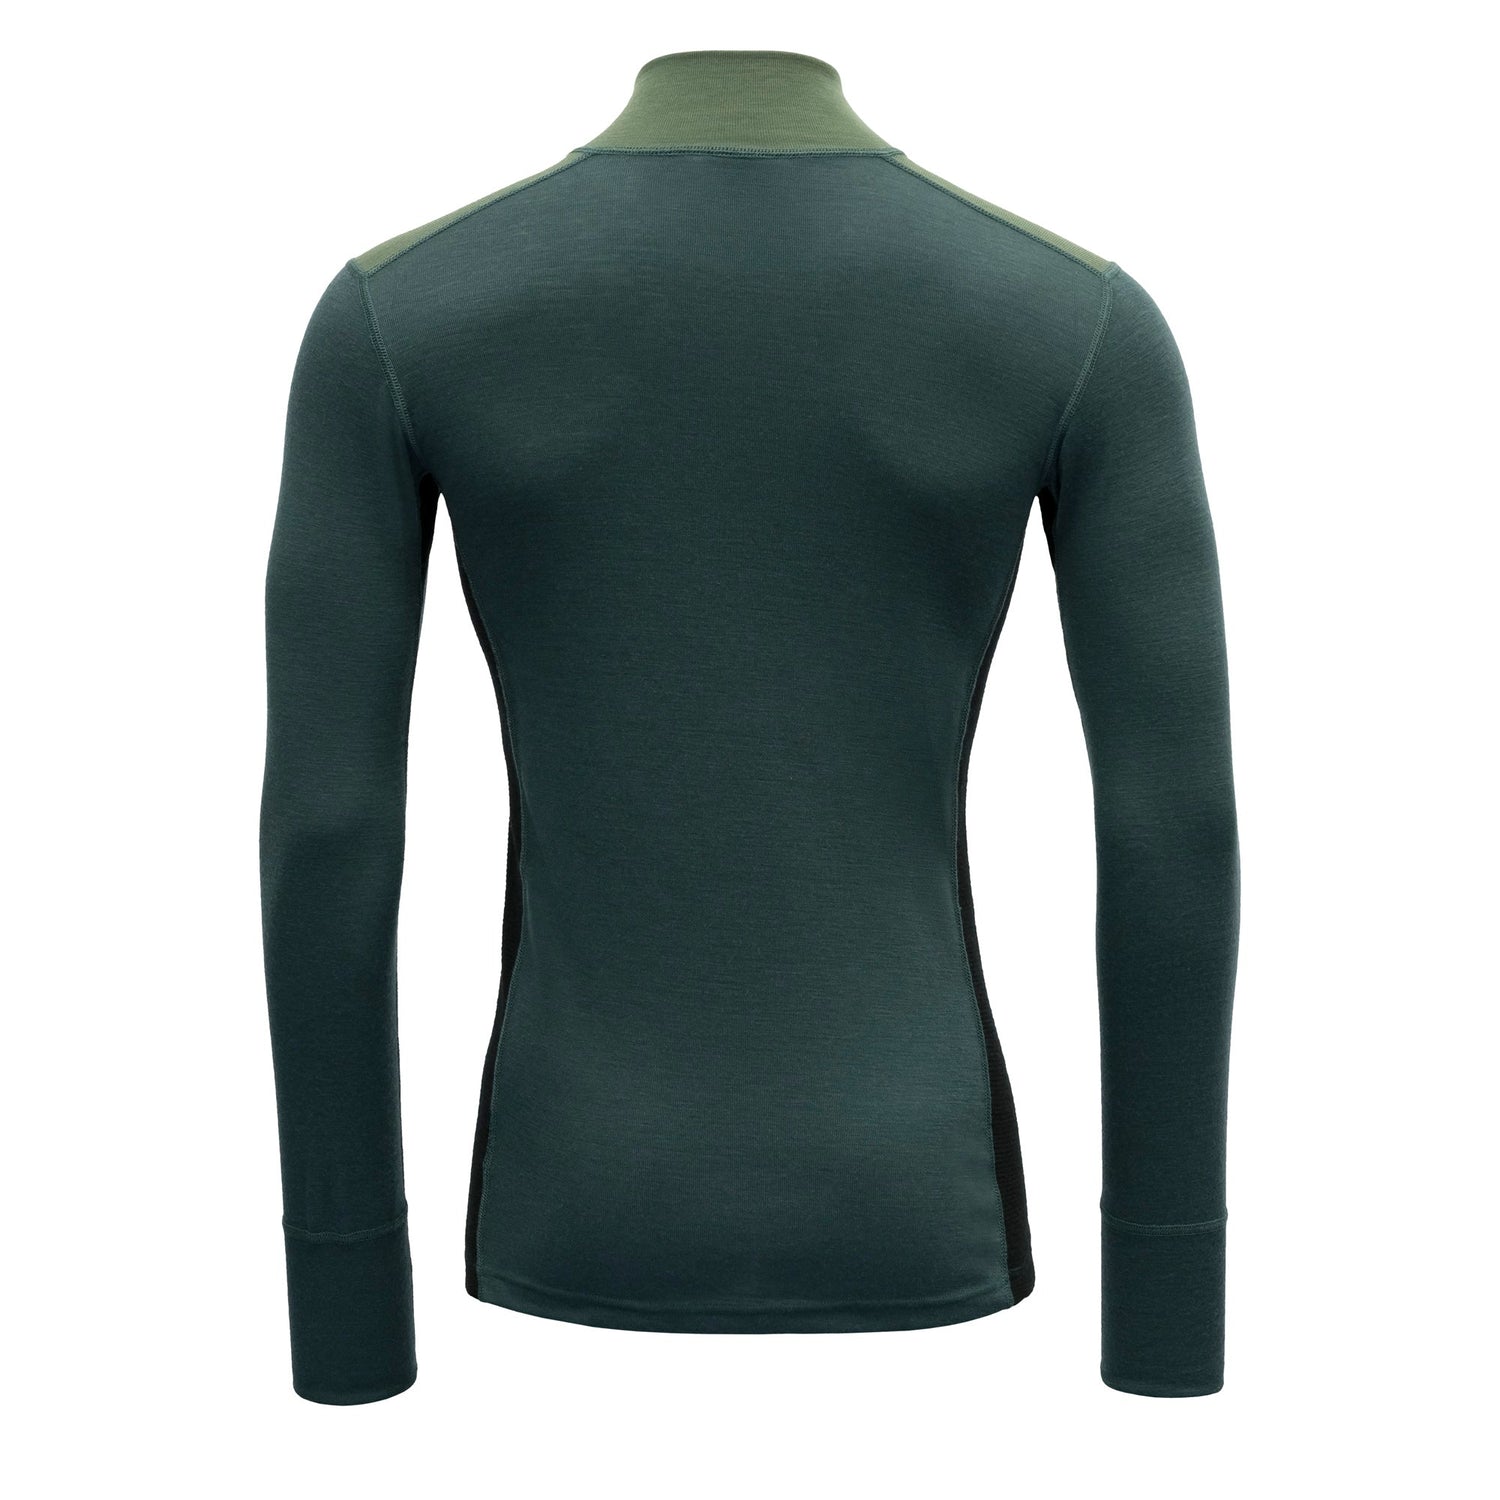 Devold M's Lauparen Zip Neck - 100% Merino Wool Forest/Woods/Black Shirt